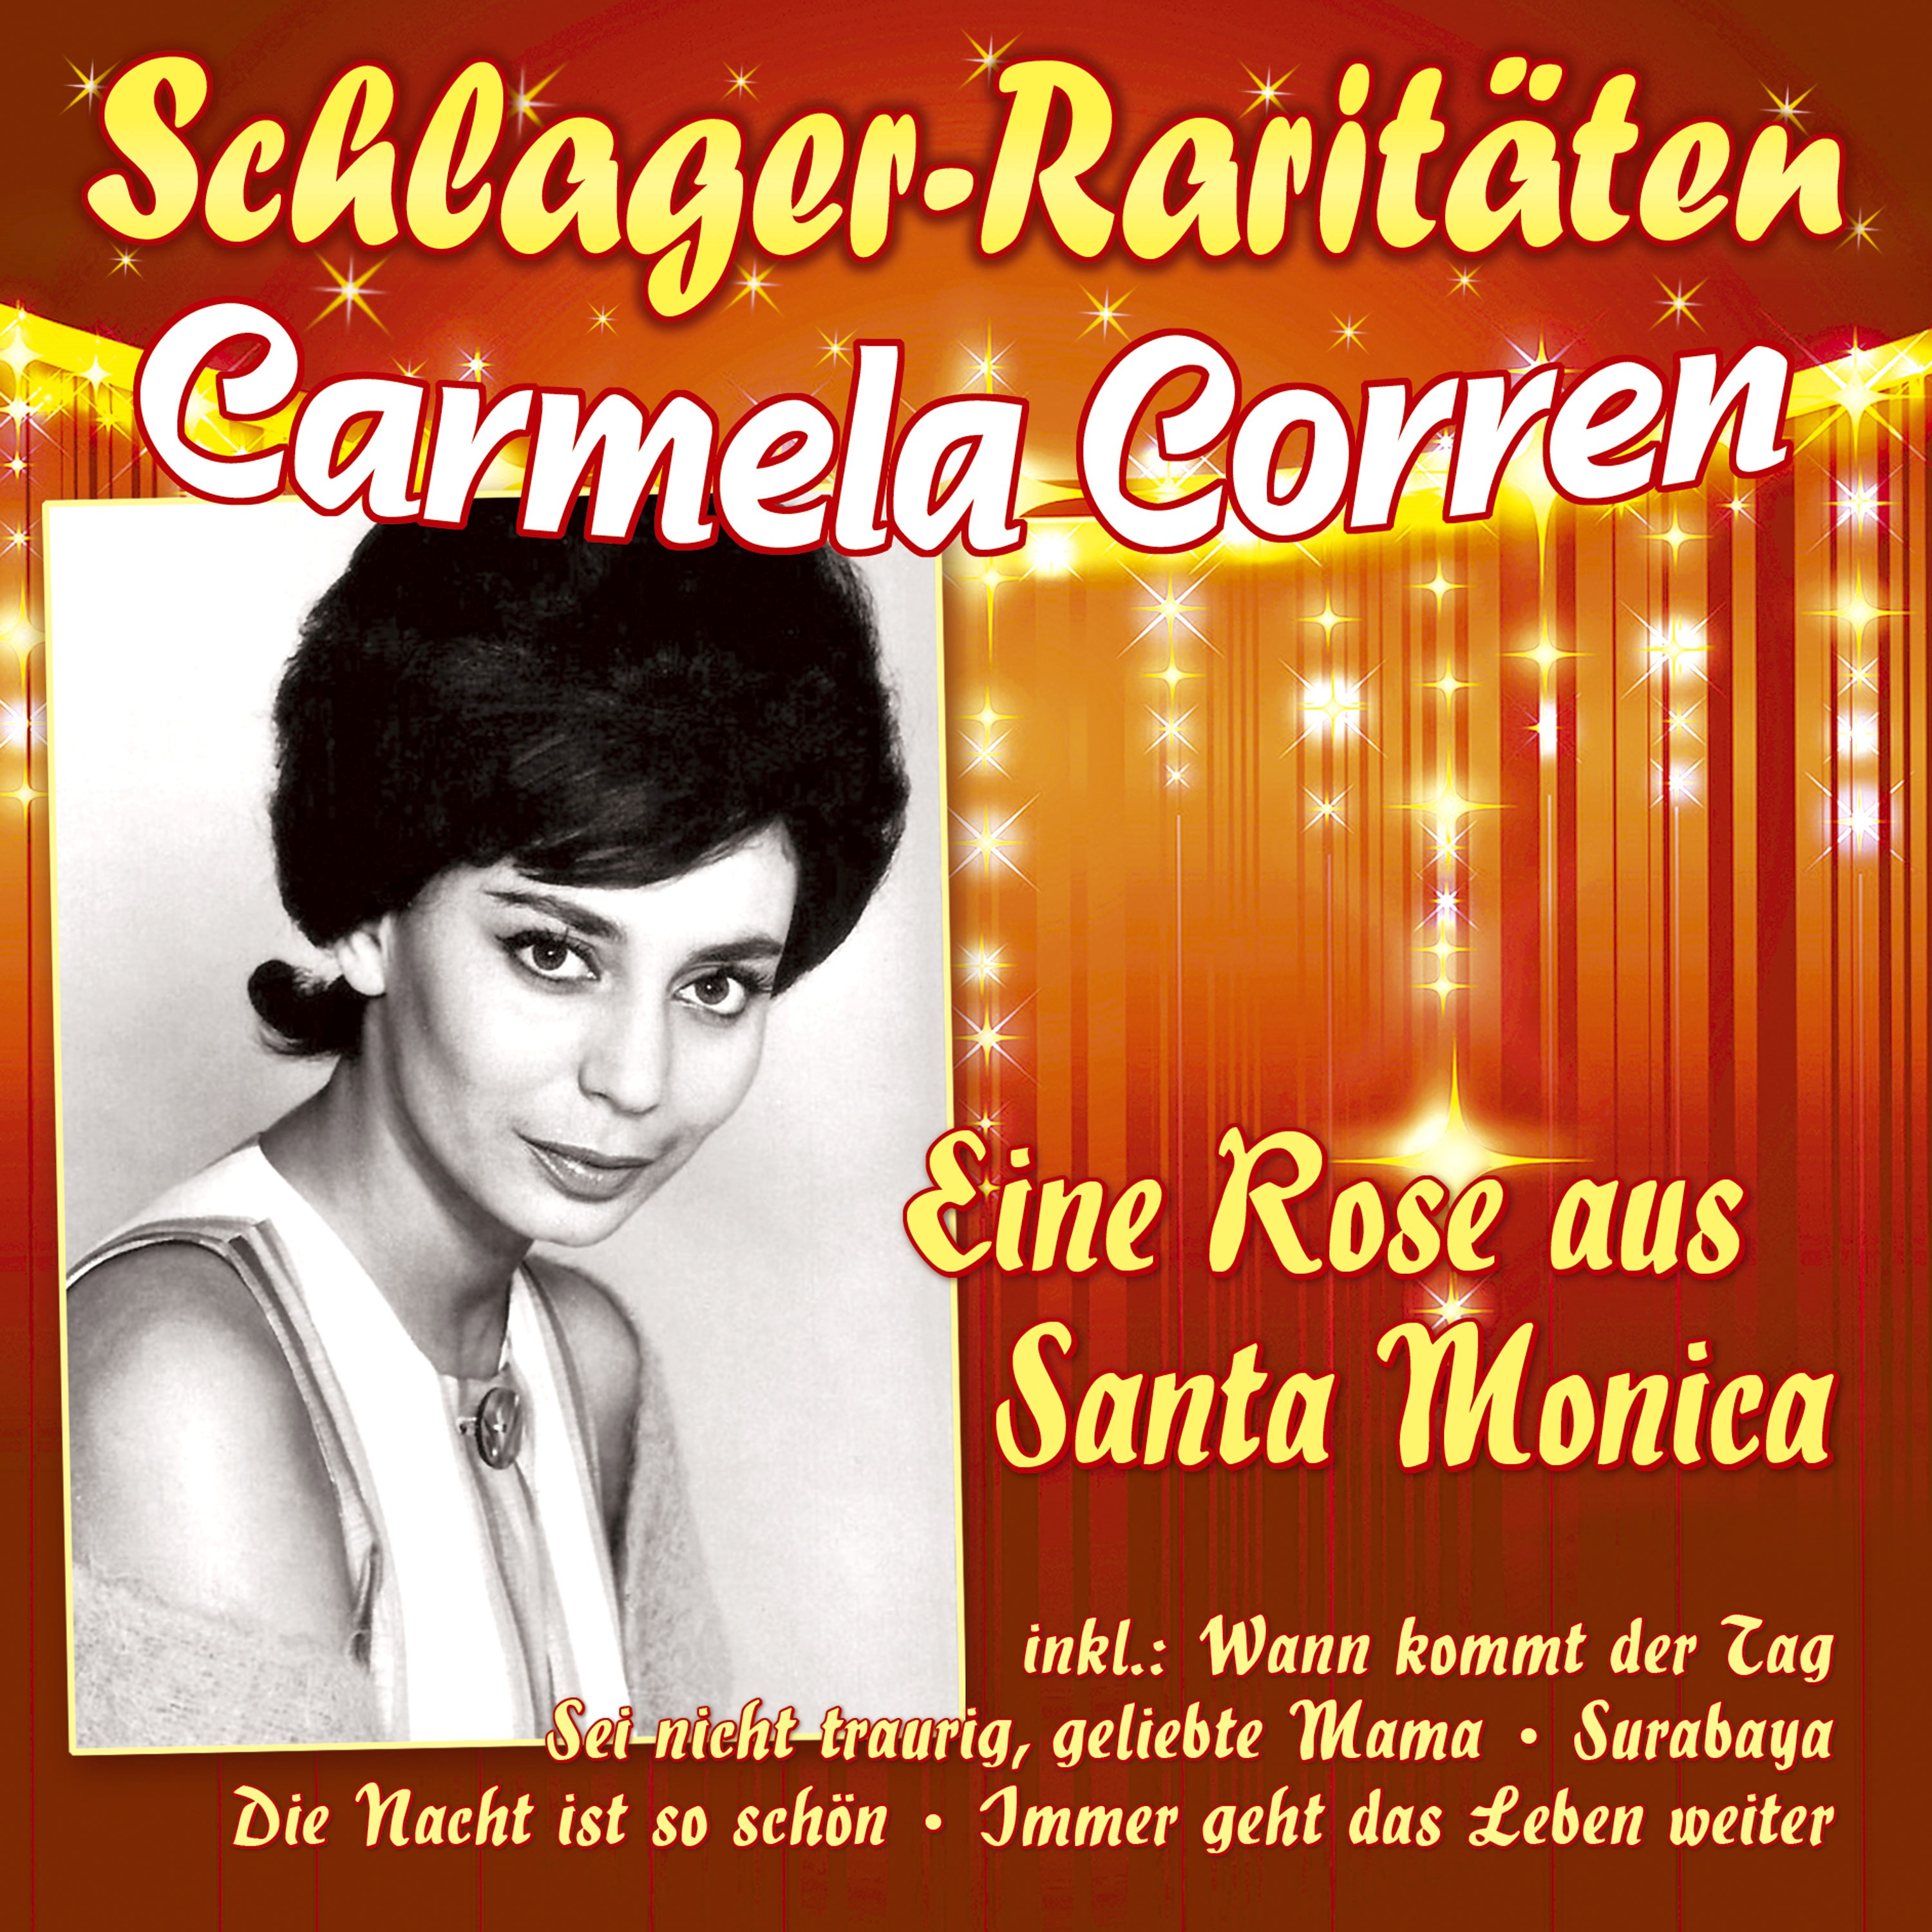 Corren, Carmela - Eine Rose aus Santa Monica (Schlager-Raritäten)